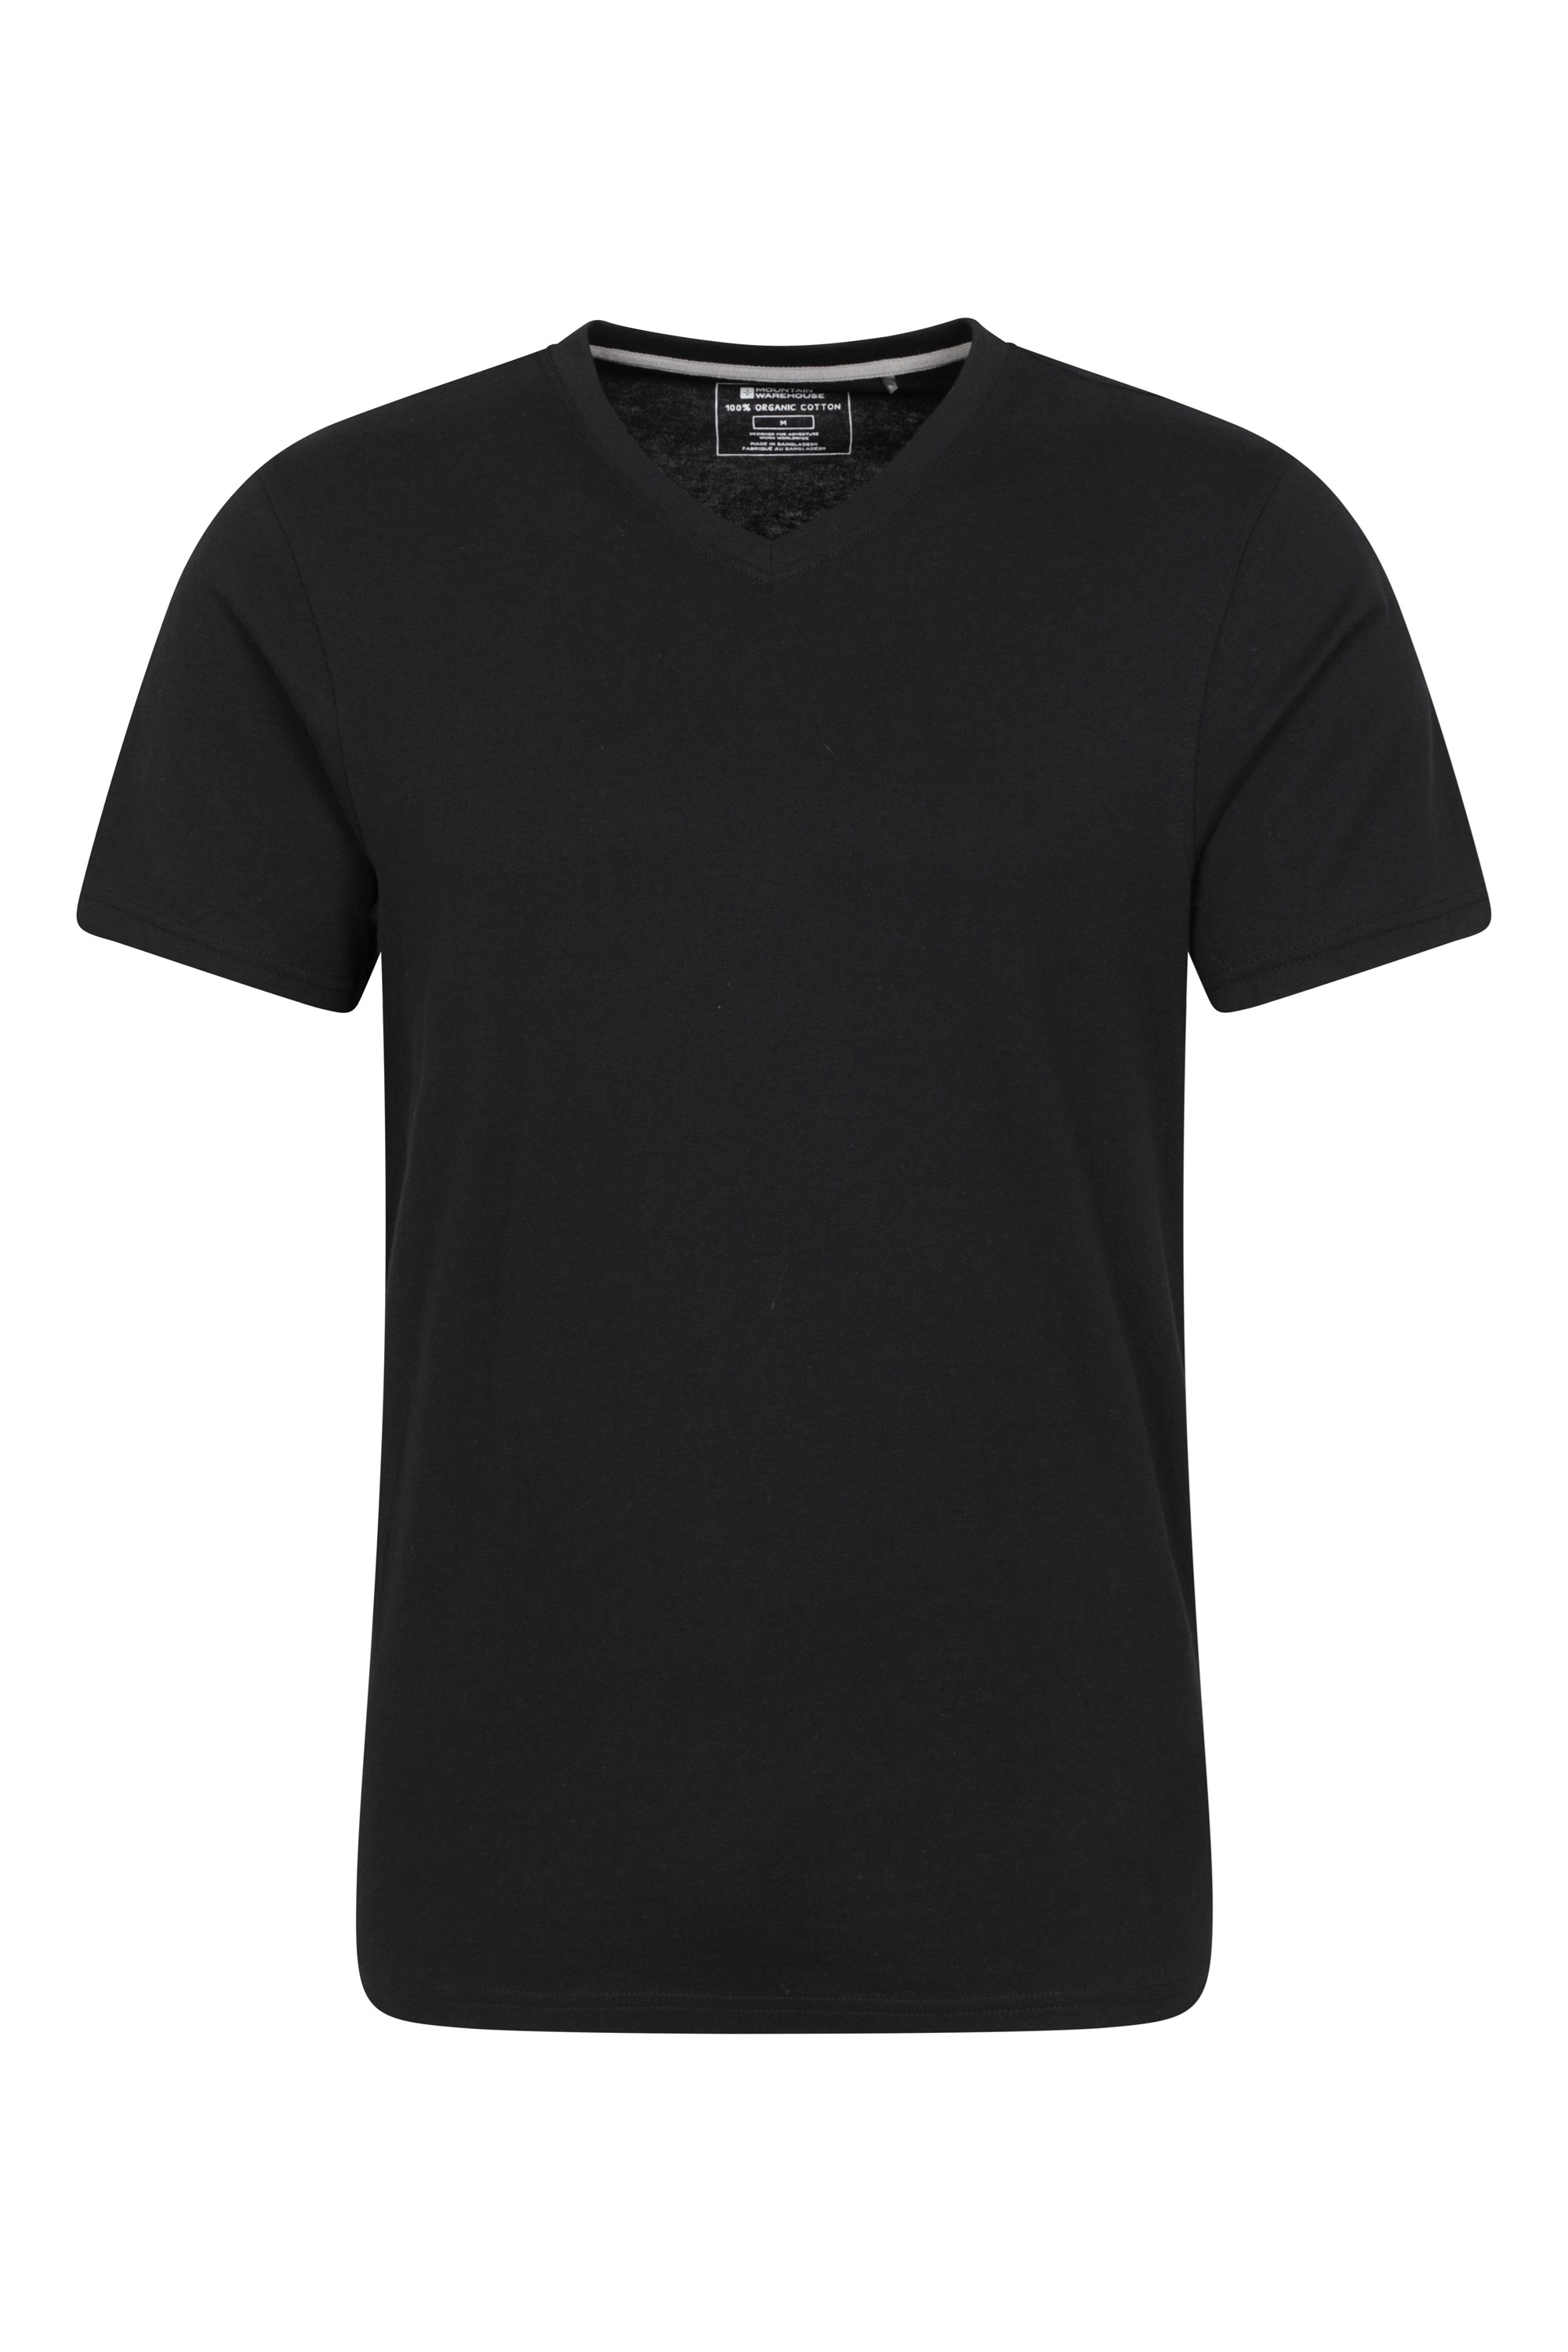 Eden koszulka męska organiczna z dekoltem w szpic - Black